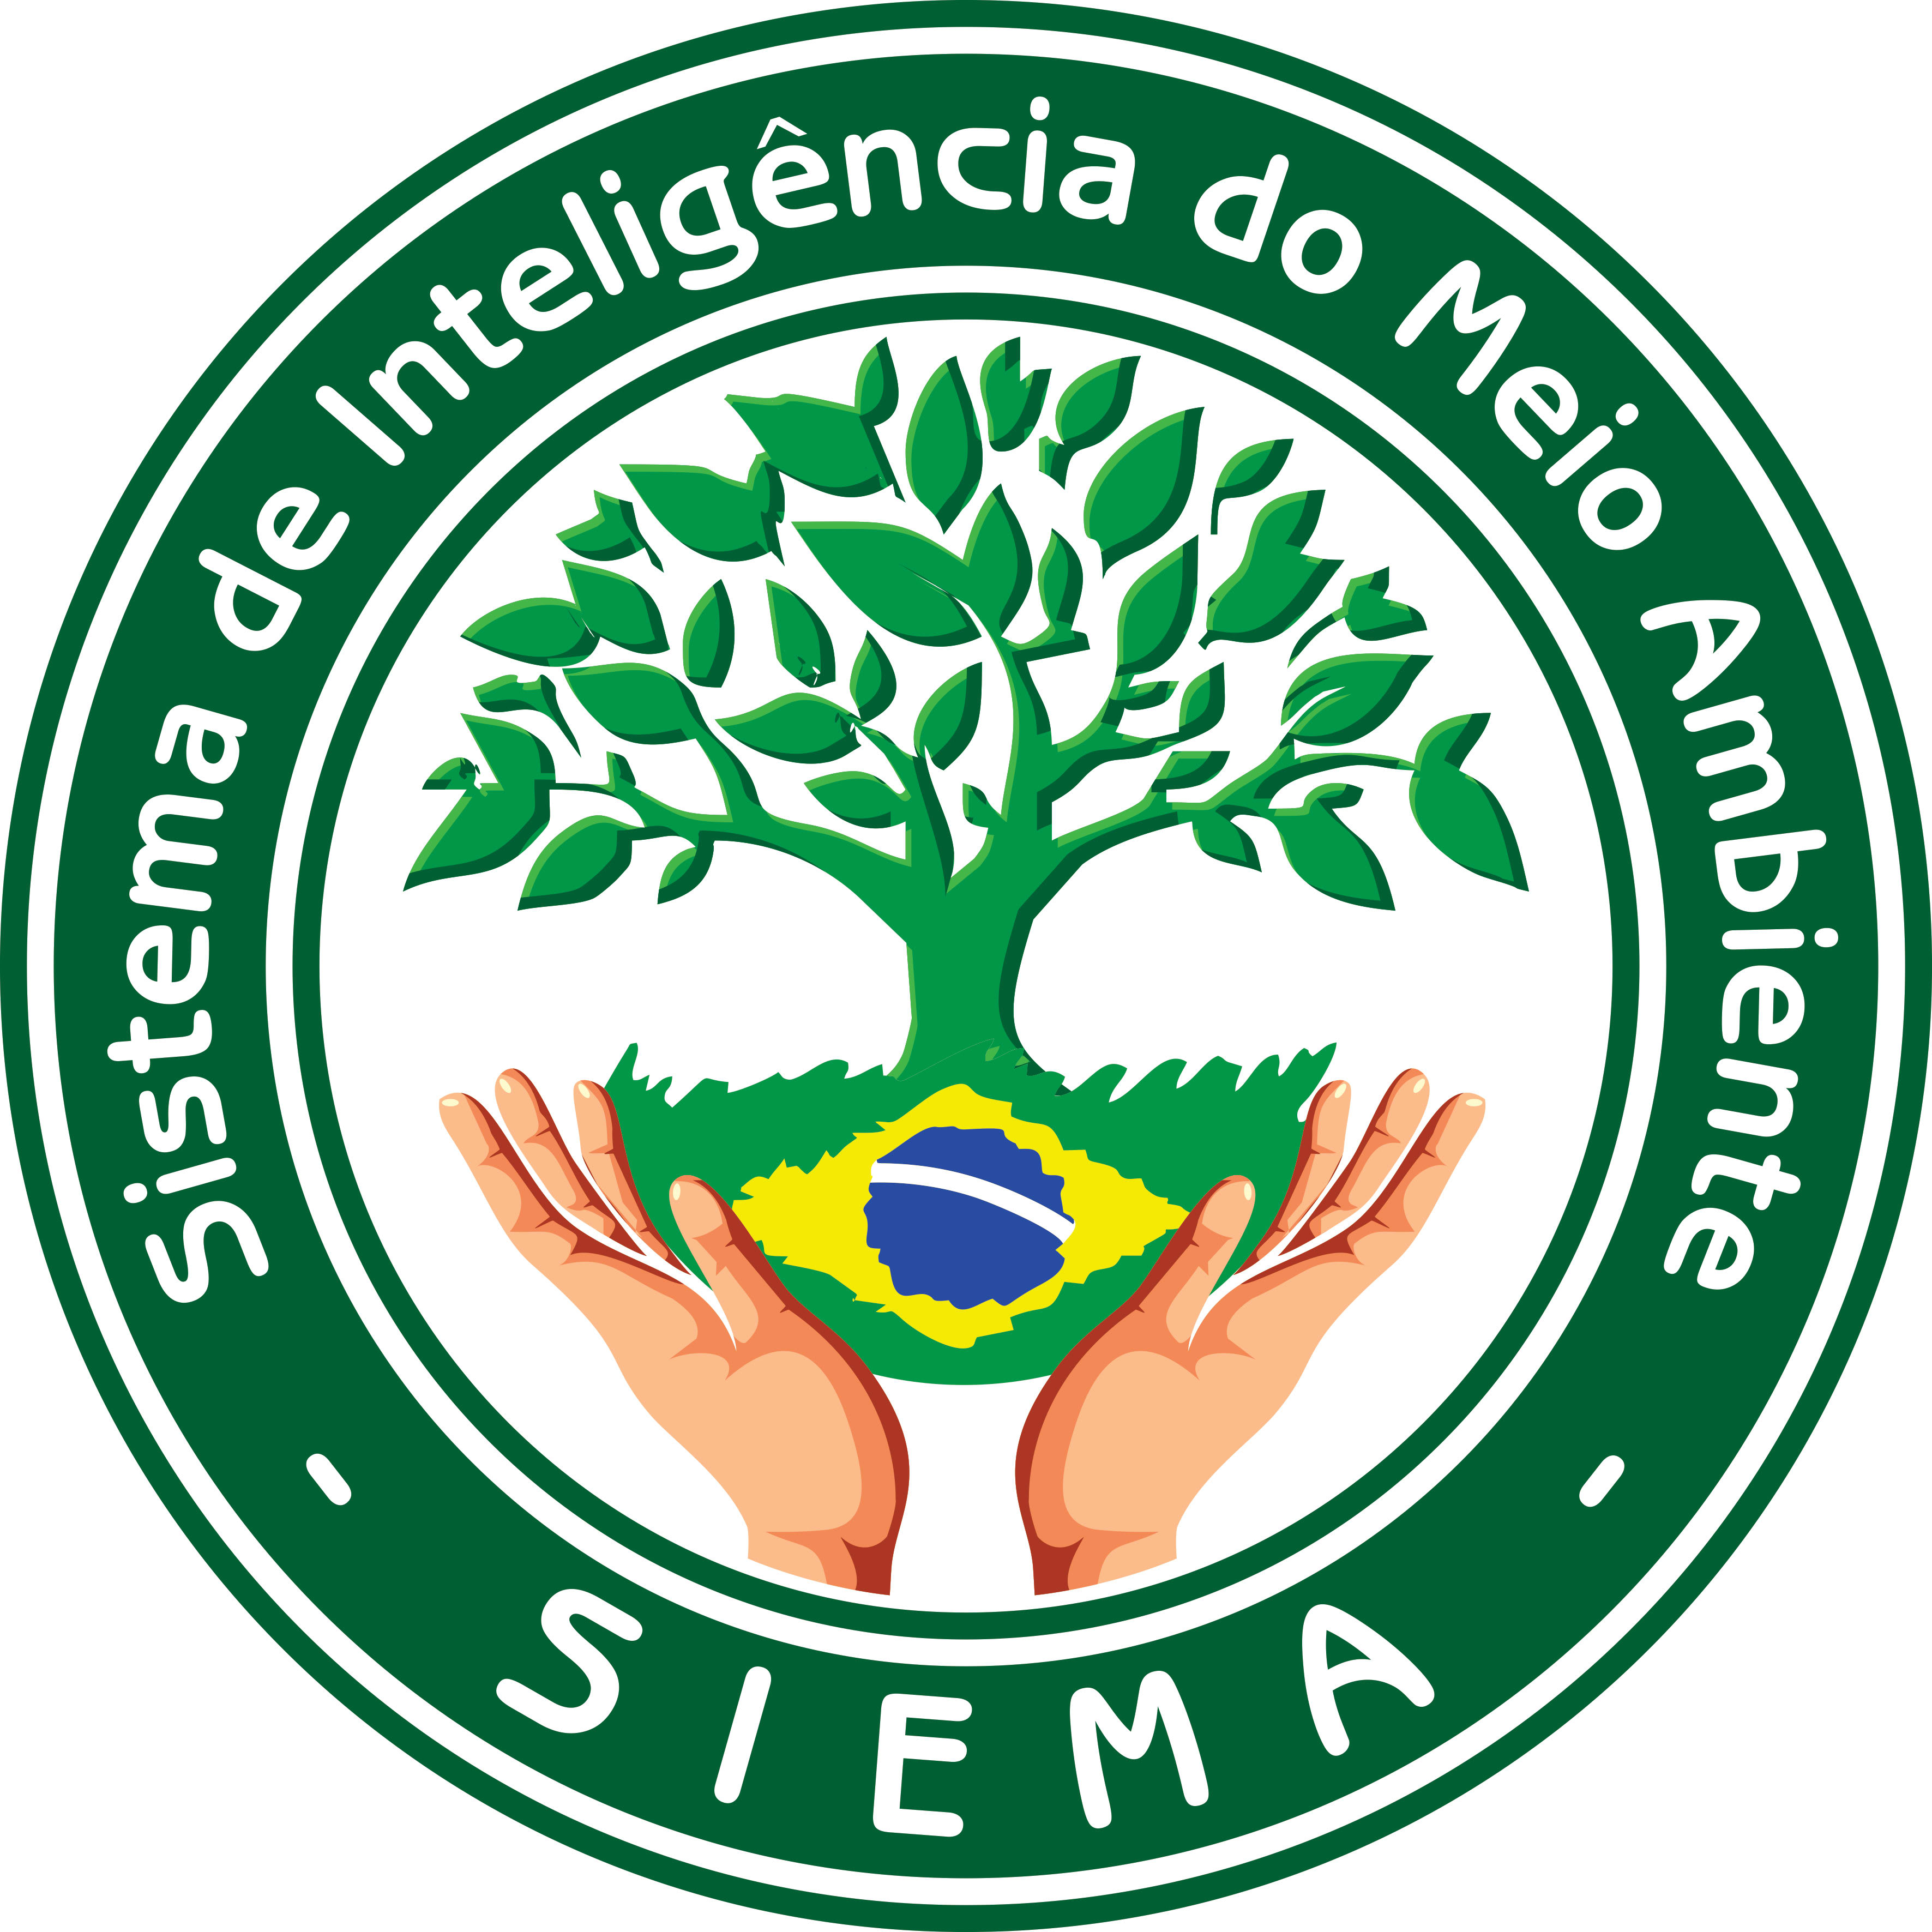 SIEMA - Sistema de Informação & Educação ao Meio Ambiente